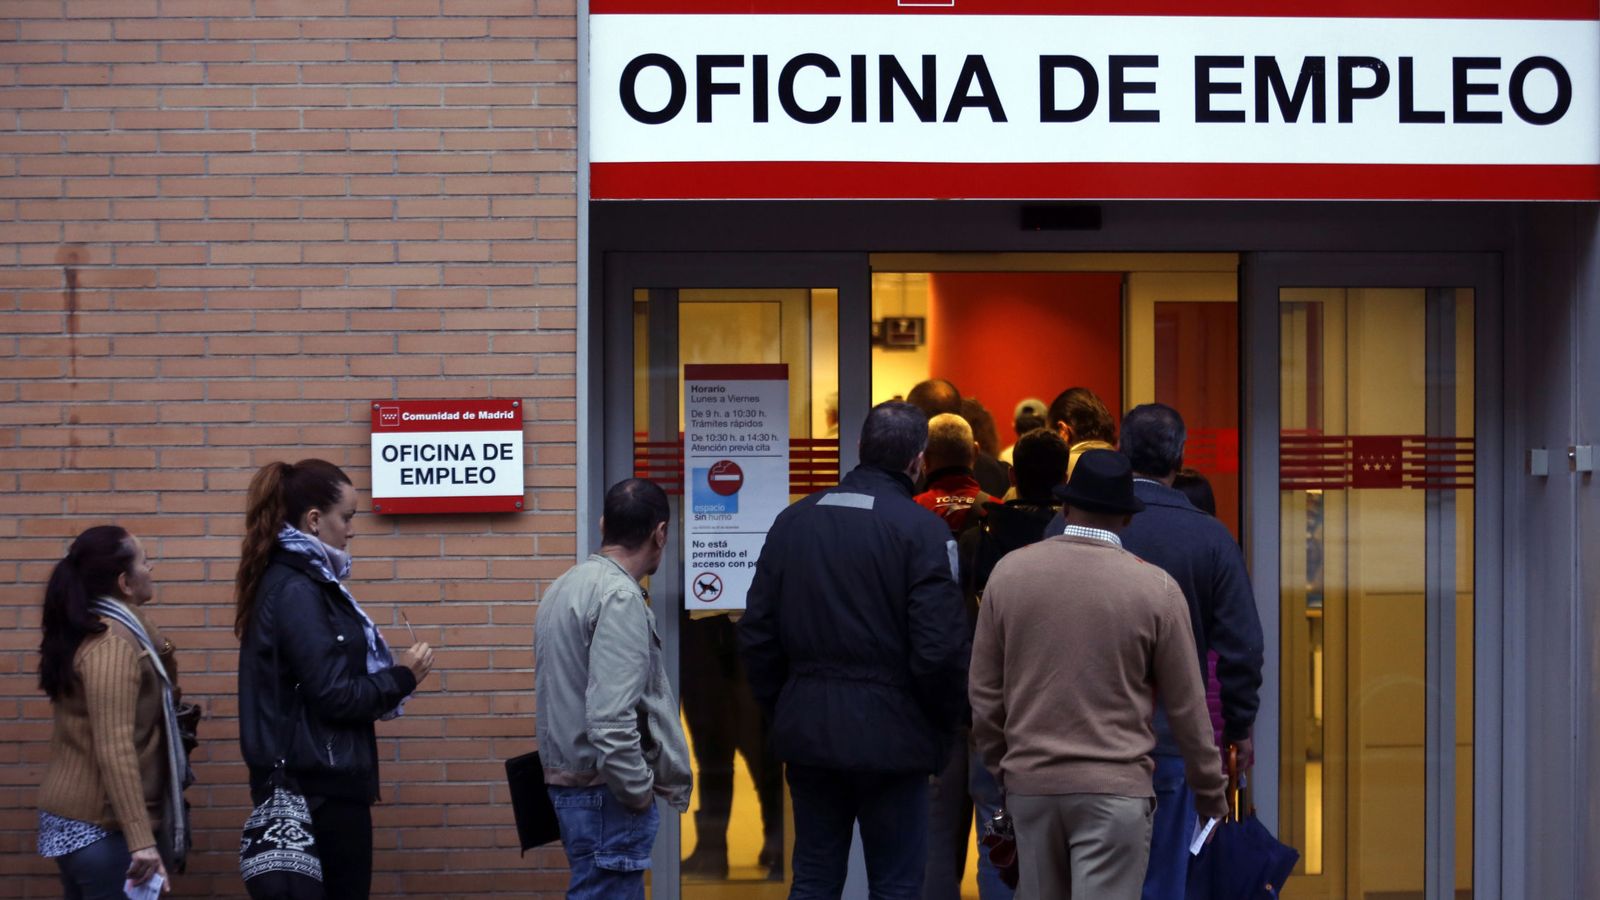 Foto: Oficina de empleo en Madrid. (Reuters)